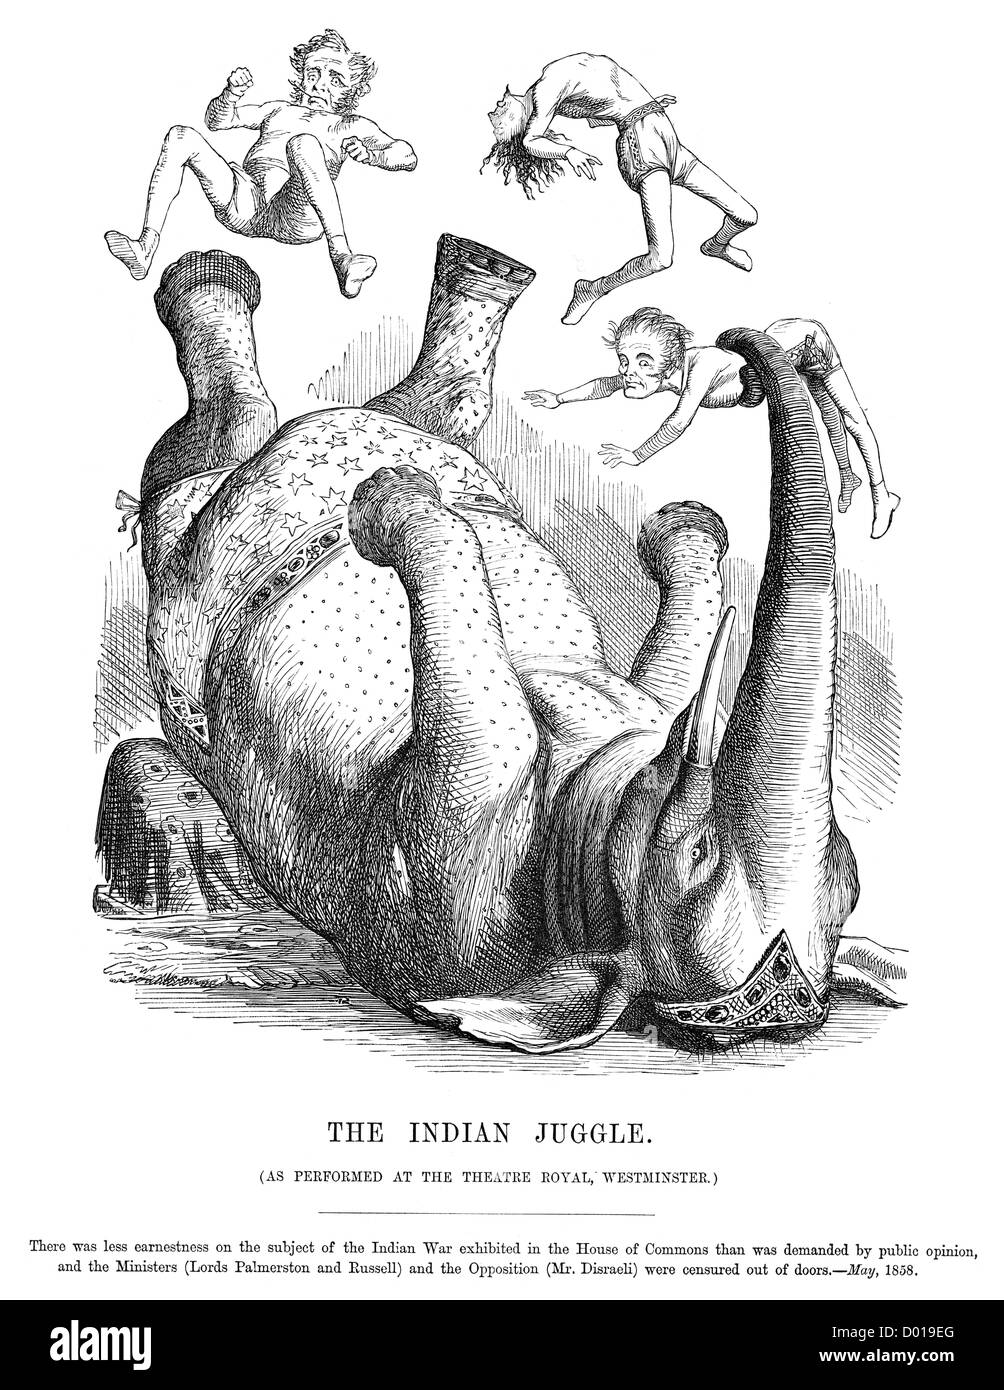 Jongler avec les Indiens. Caricature de Lords Palmerston, Russell et M. Disraeli, au cours de la Rébellion indienne, mai 1858. Banque D'Images